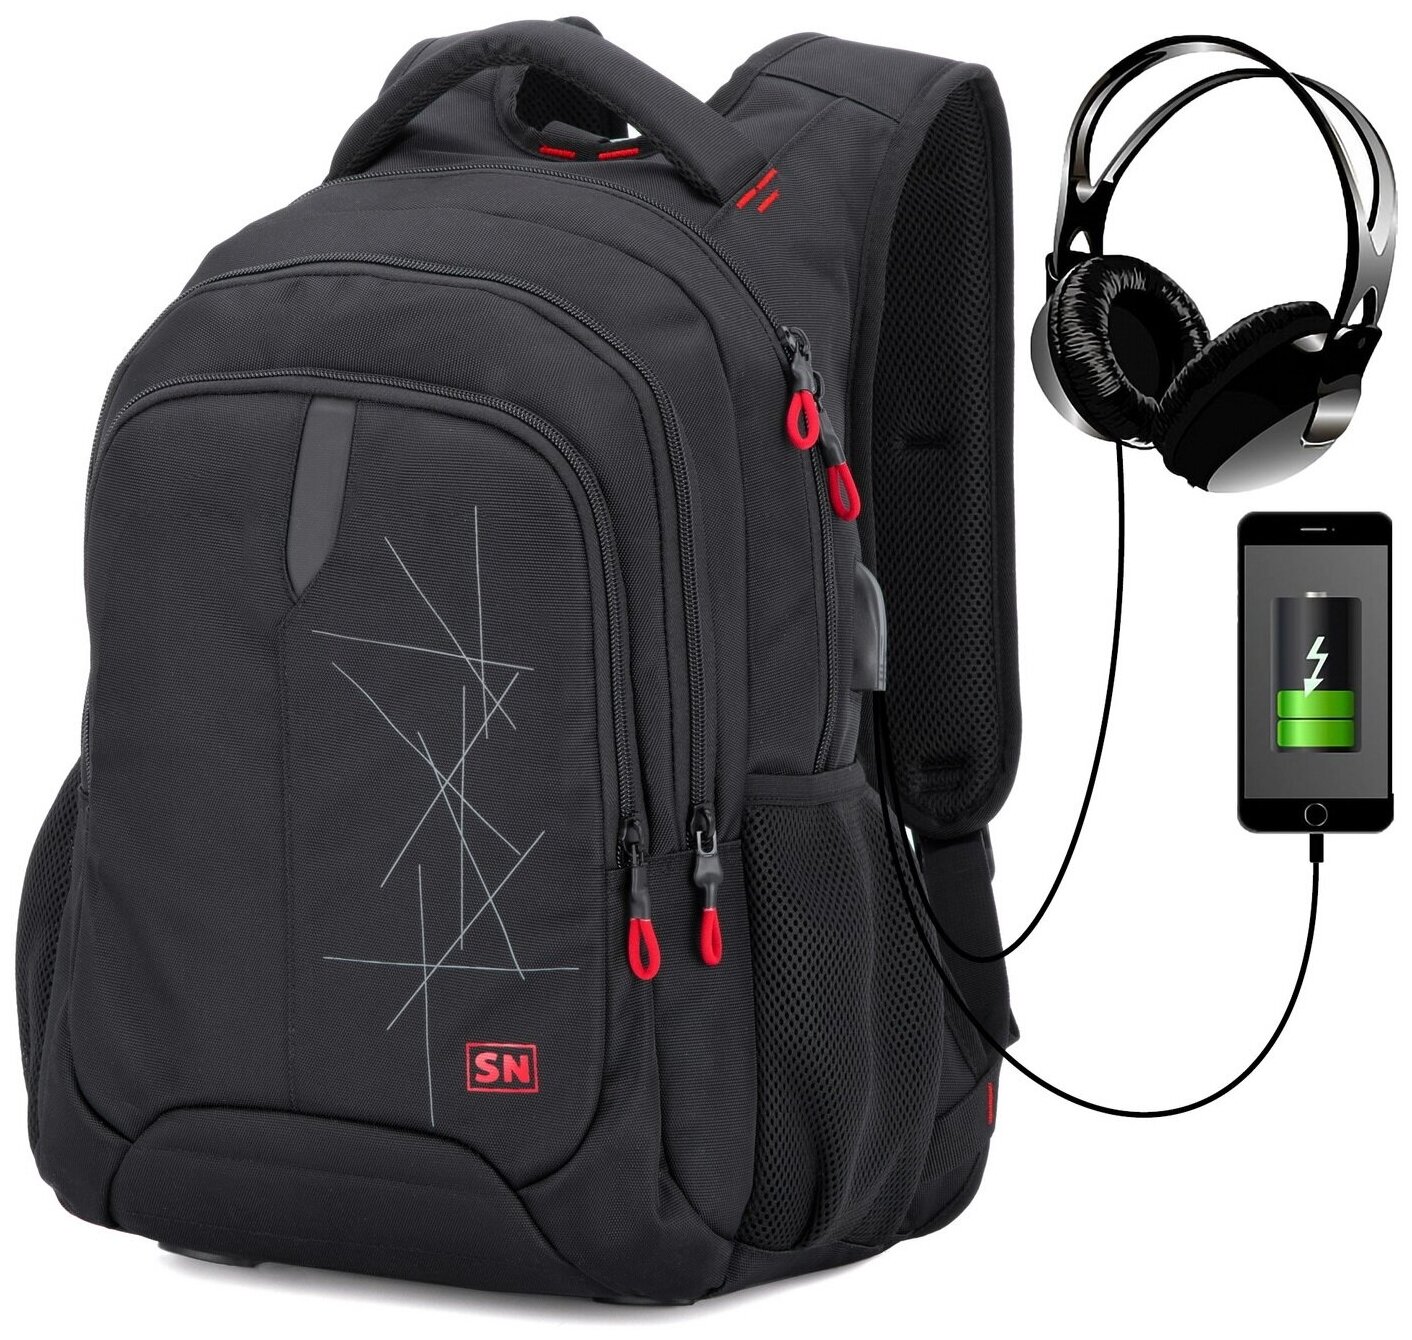 Рюкзак школьный для подростка, черный городской для мальчика/девочки, с анатомической спинкой и USB-слотом, 30 л, SkyName (СкайНейм)